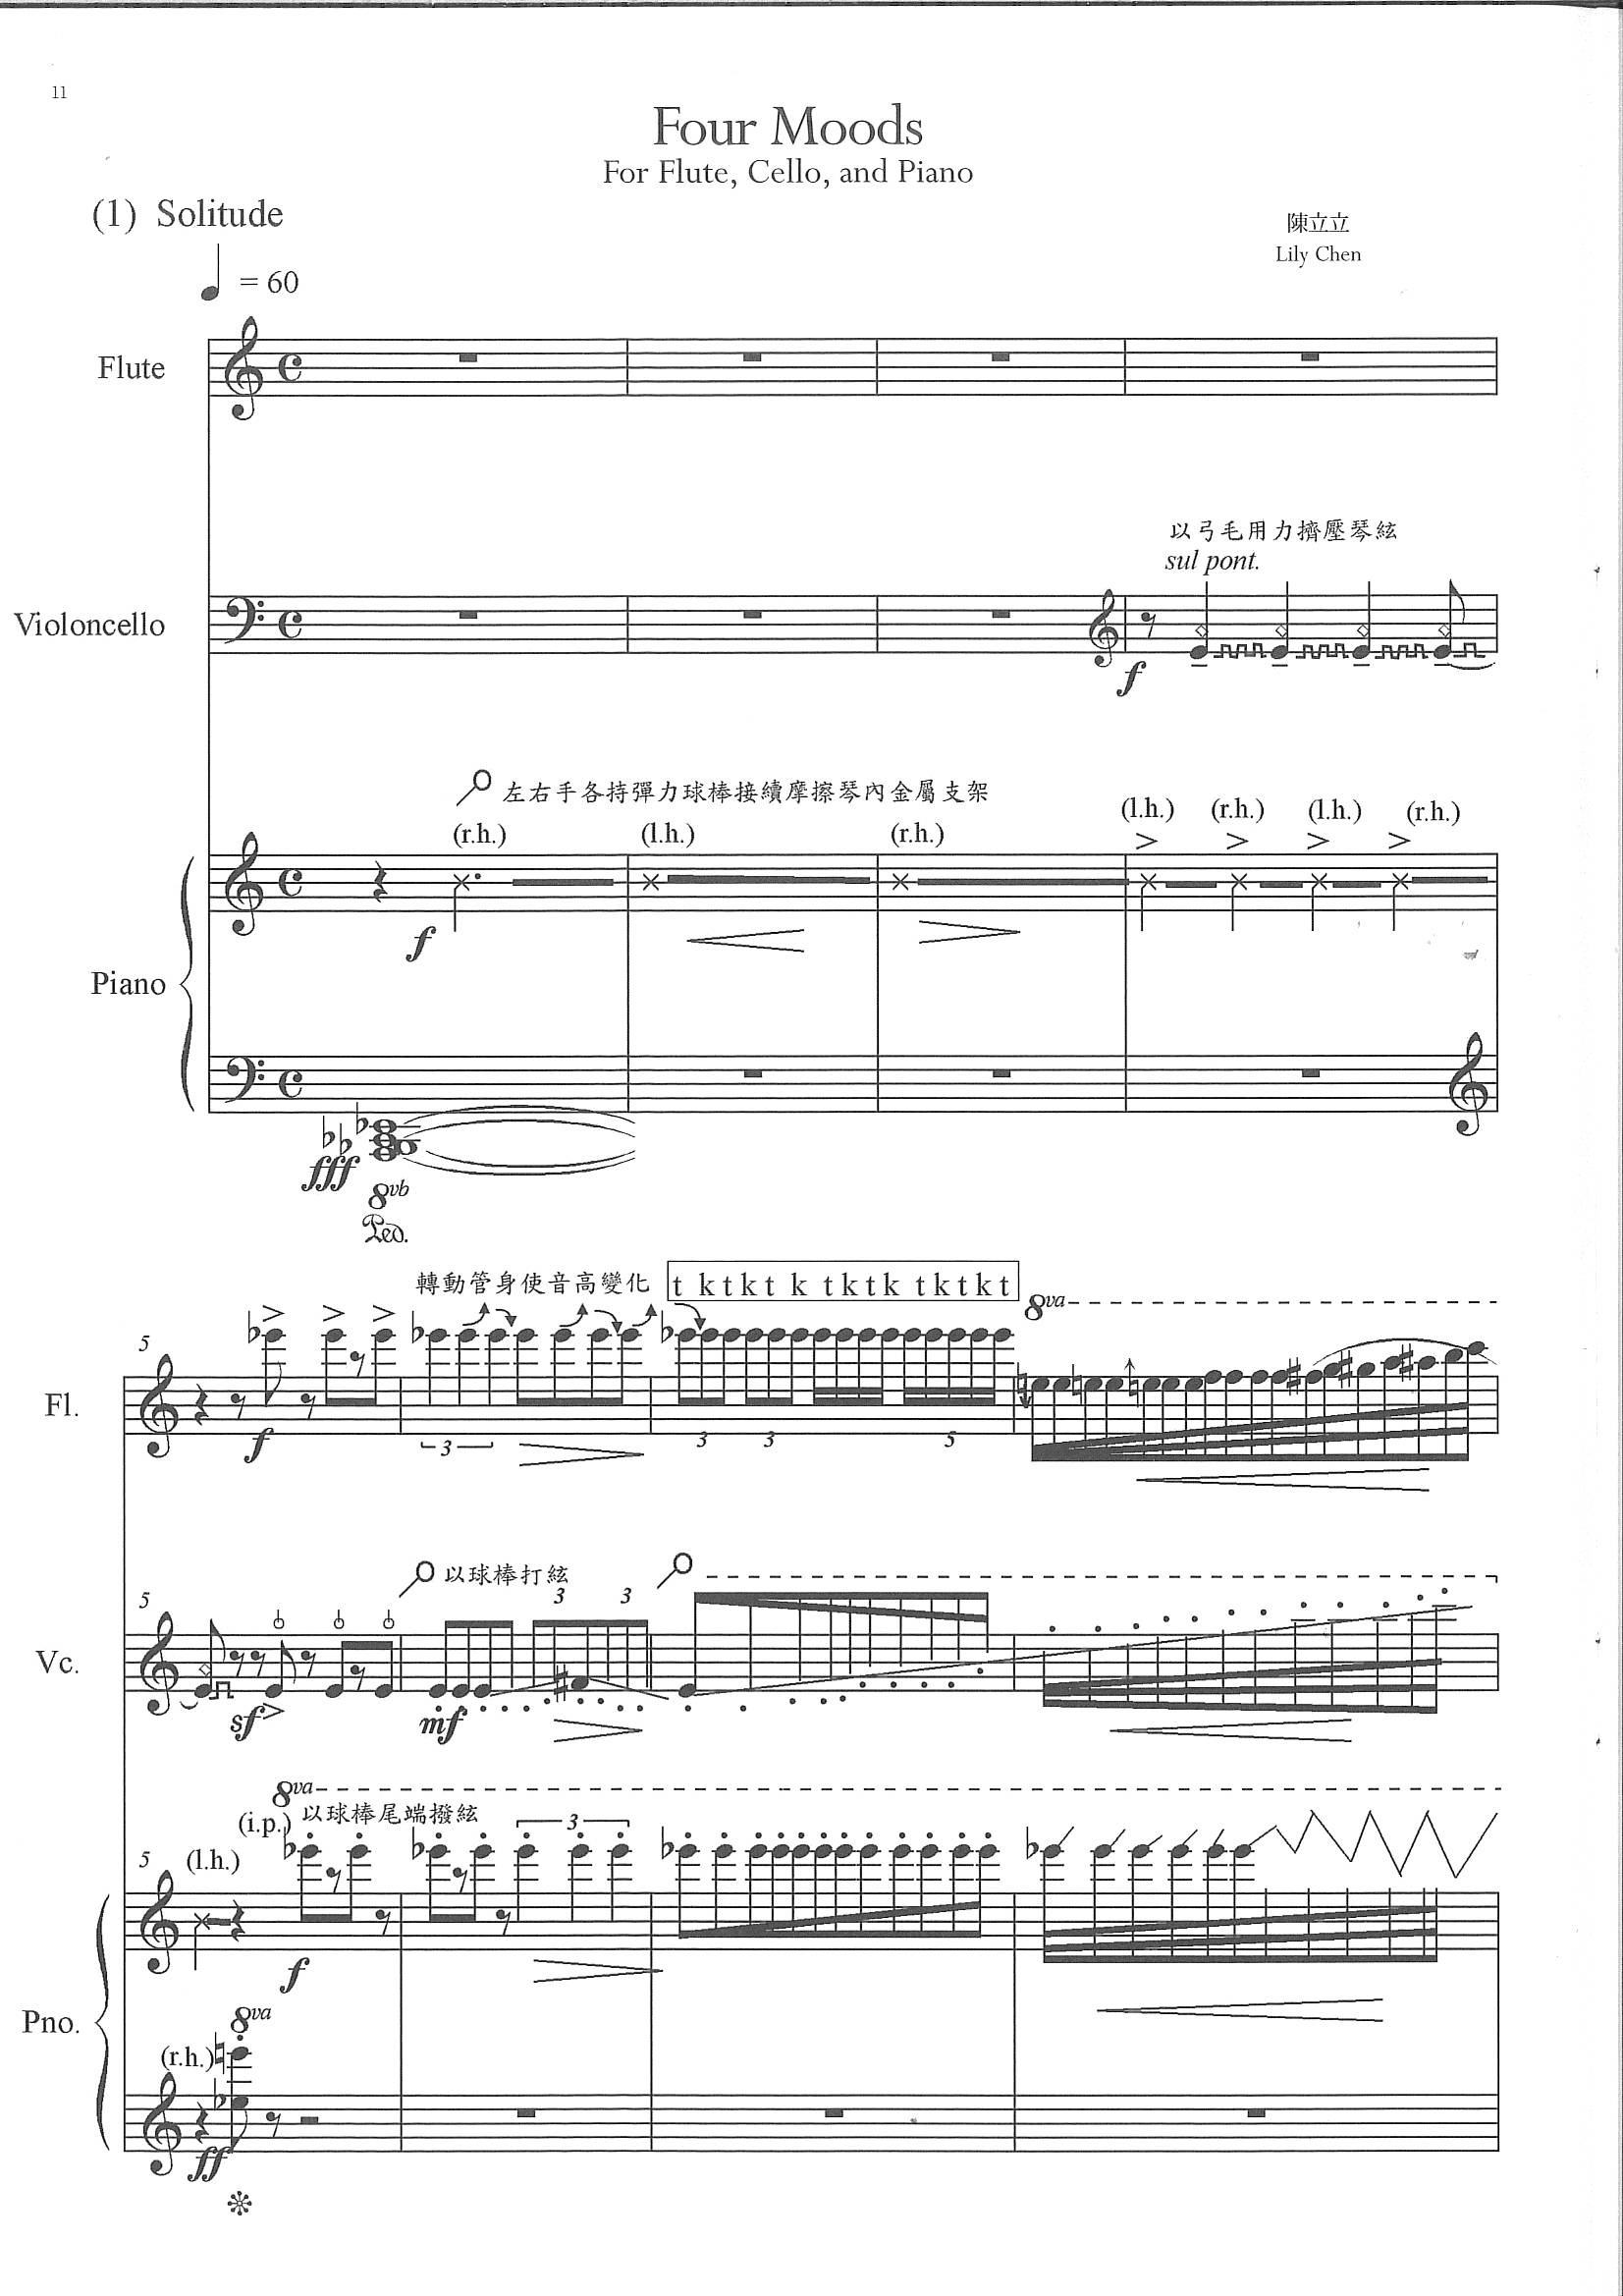 陳立立《Four Moods》給長笛、大提琴和鋼琴的三重奏_p1.jpg